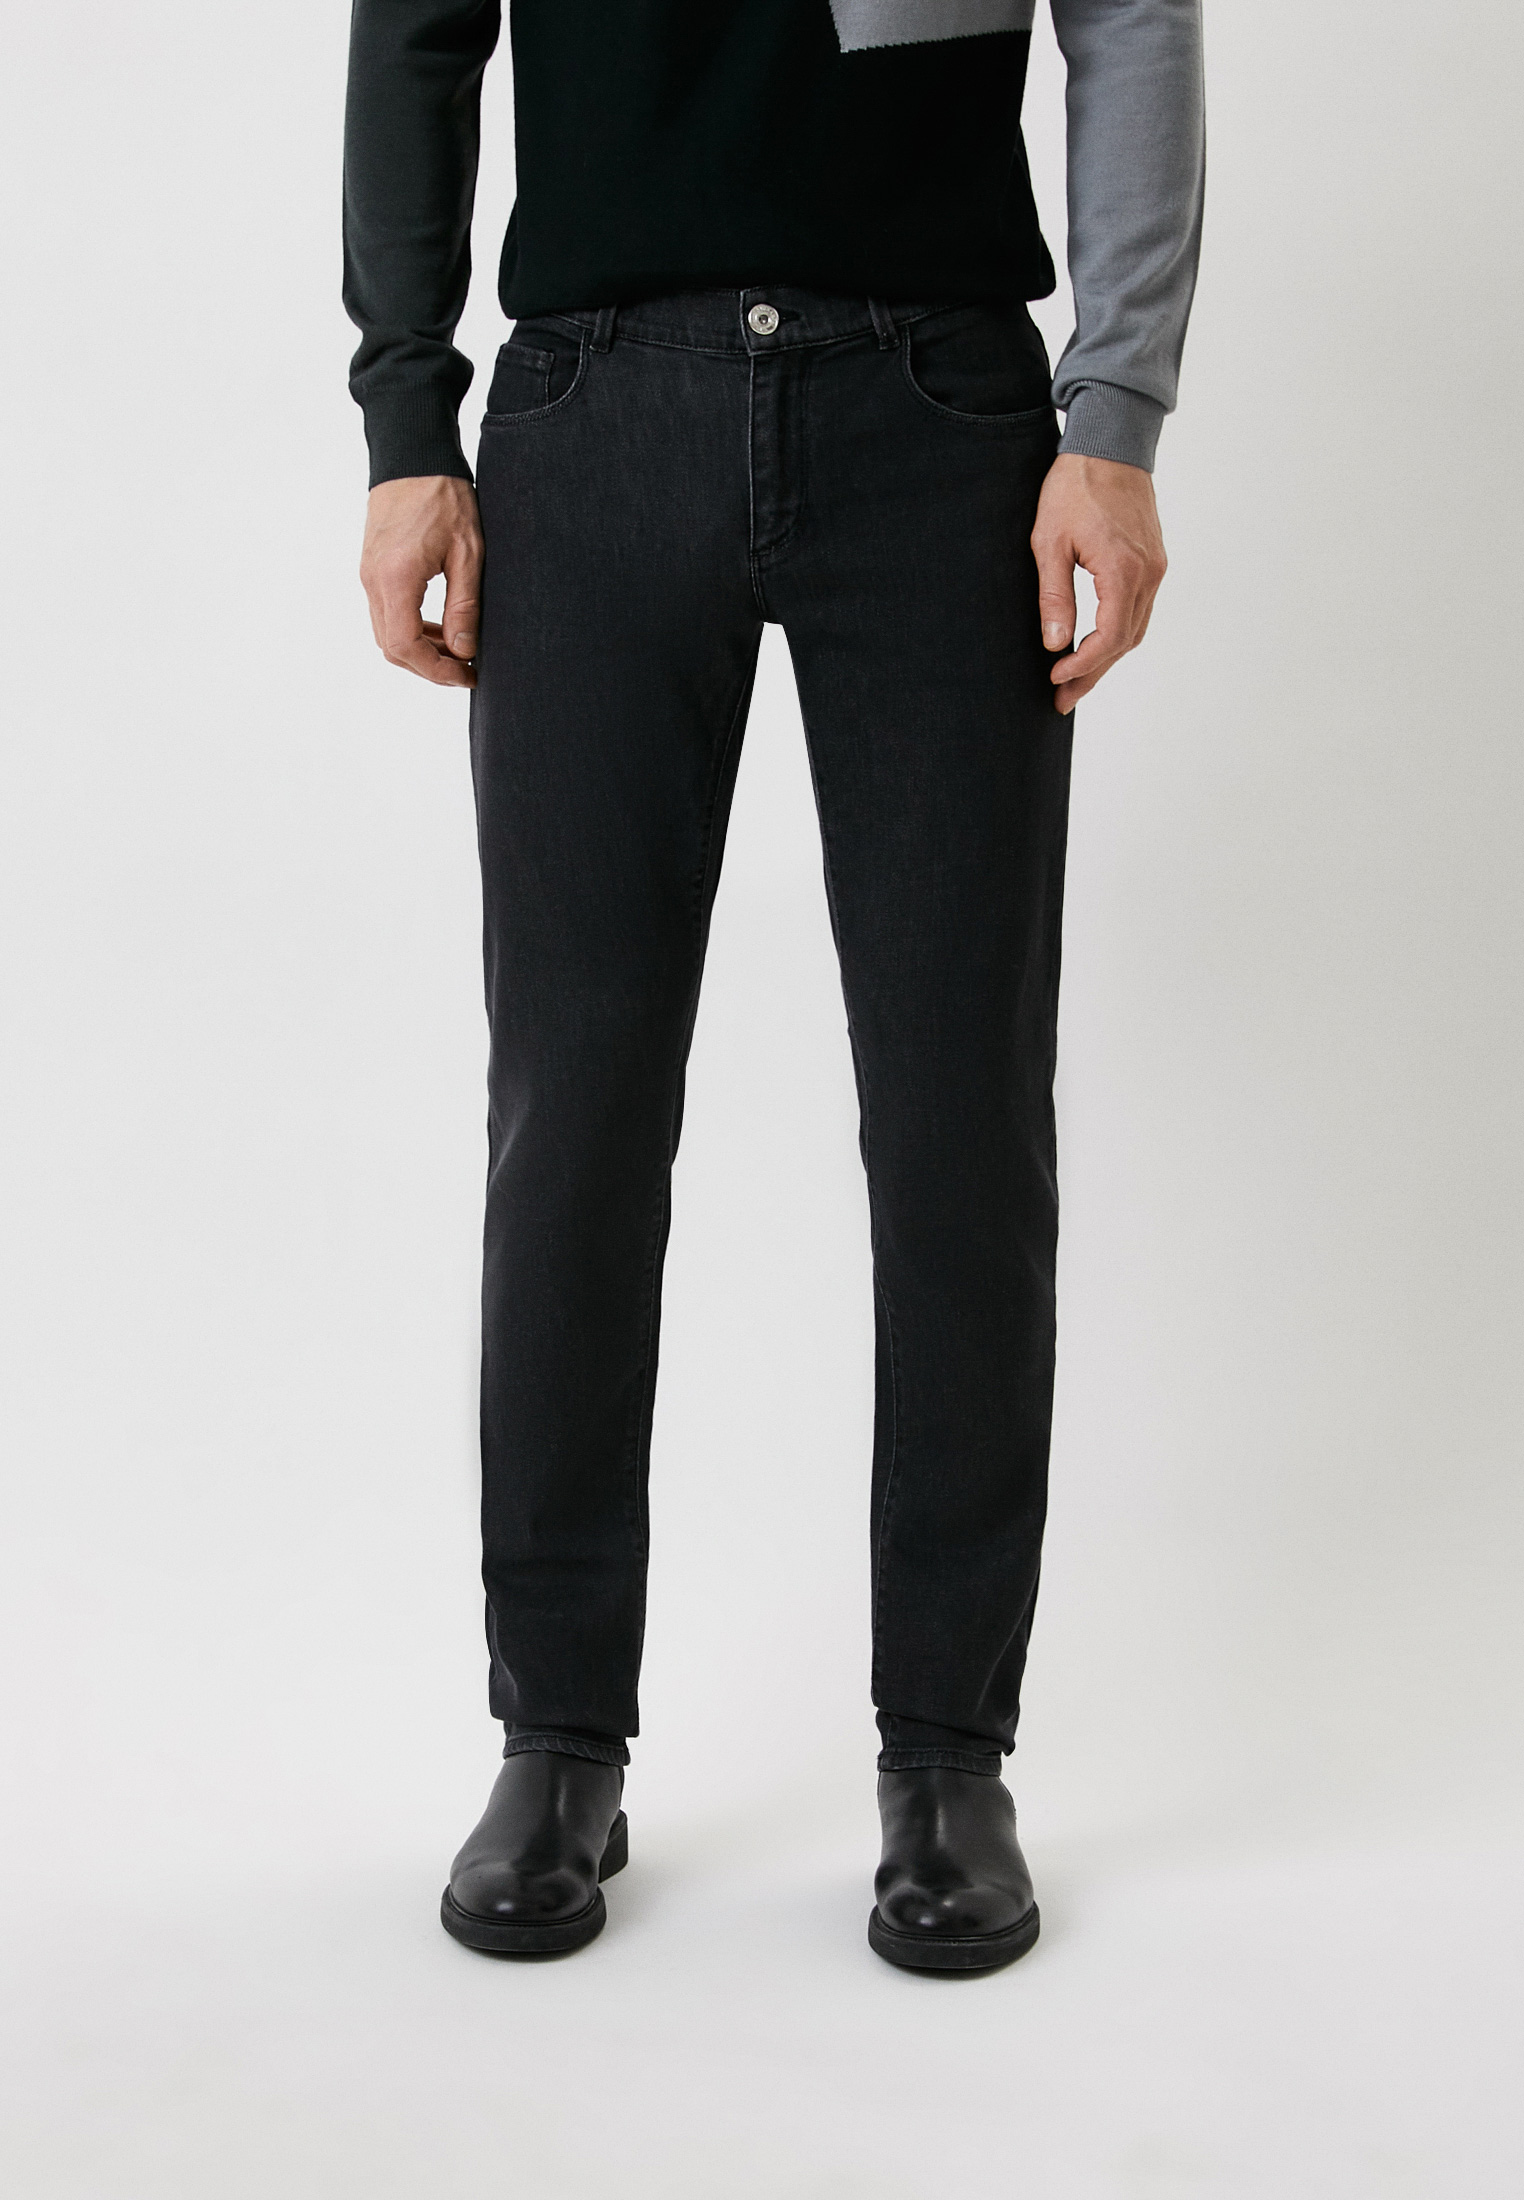 Мужские прямые джинсы Trussardi (Труссарди) 52J00000-1T003122-C-008: изображение 1